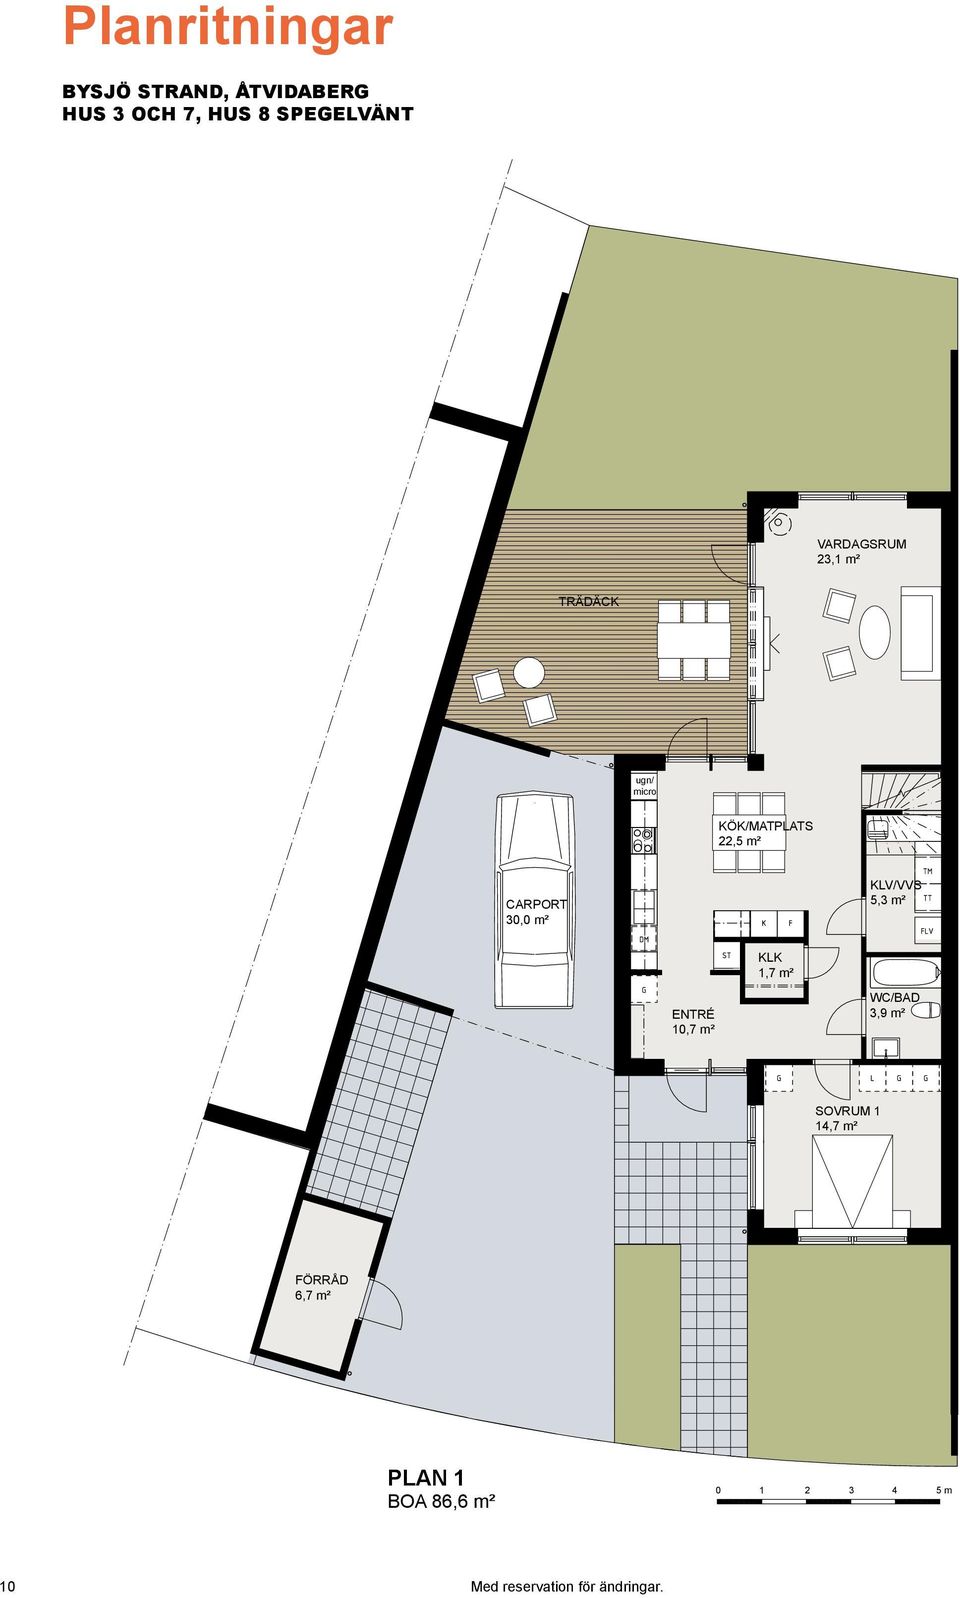 KLK 1,7 m² ENTRÉ 10,7 m² WC/BAD 3,9 m² SOVRUM 1 14,7 m² FÖRRÅD 6,7 m² PLAN 1 BOA